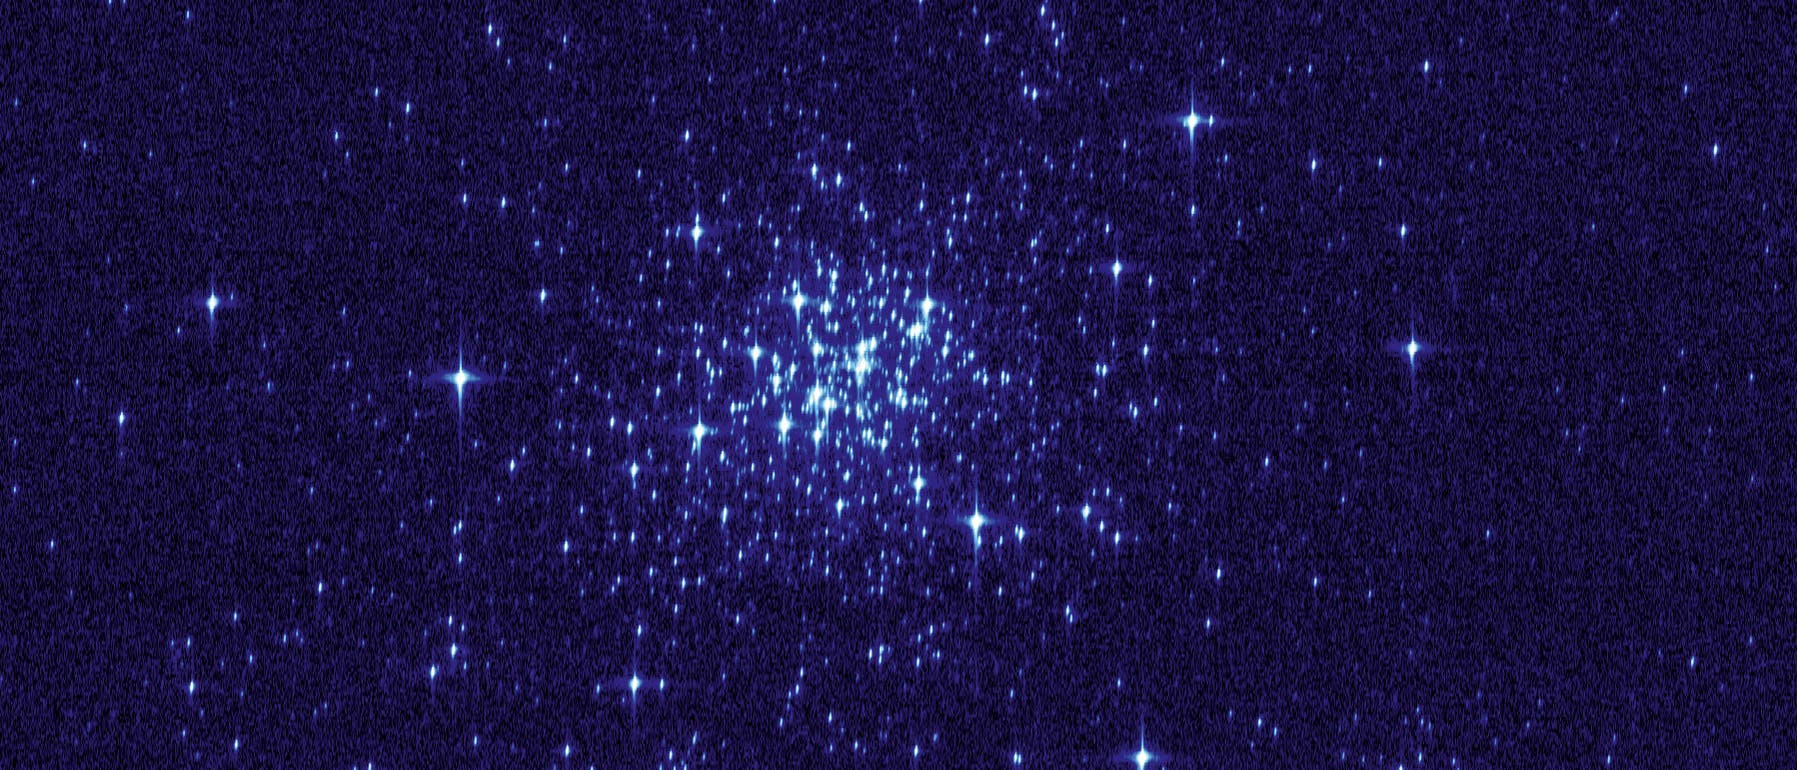 Testbild des Gaia-Satelliten zeigt den jungen Kugelsternhaufen NGC 1818